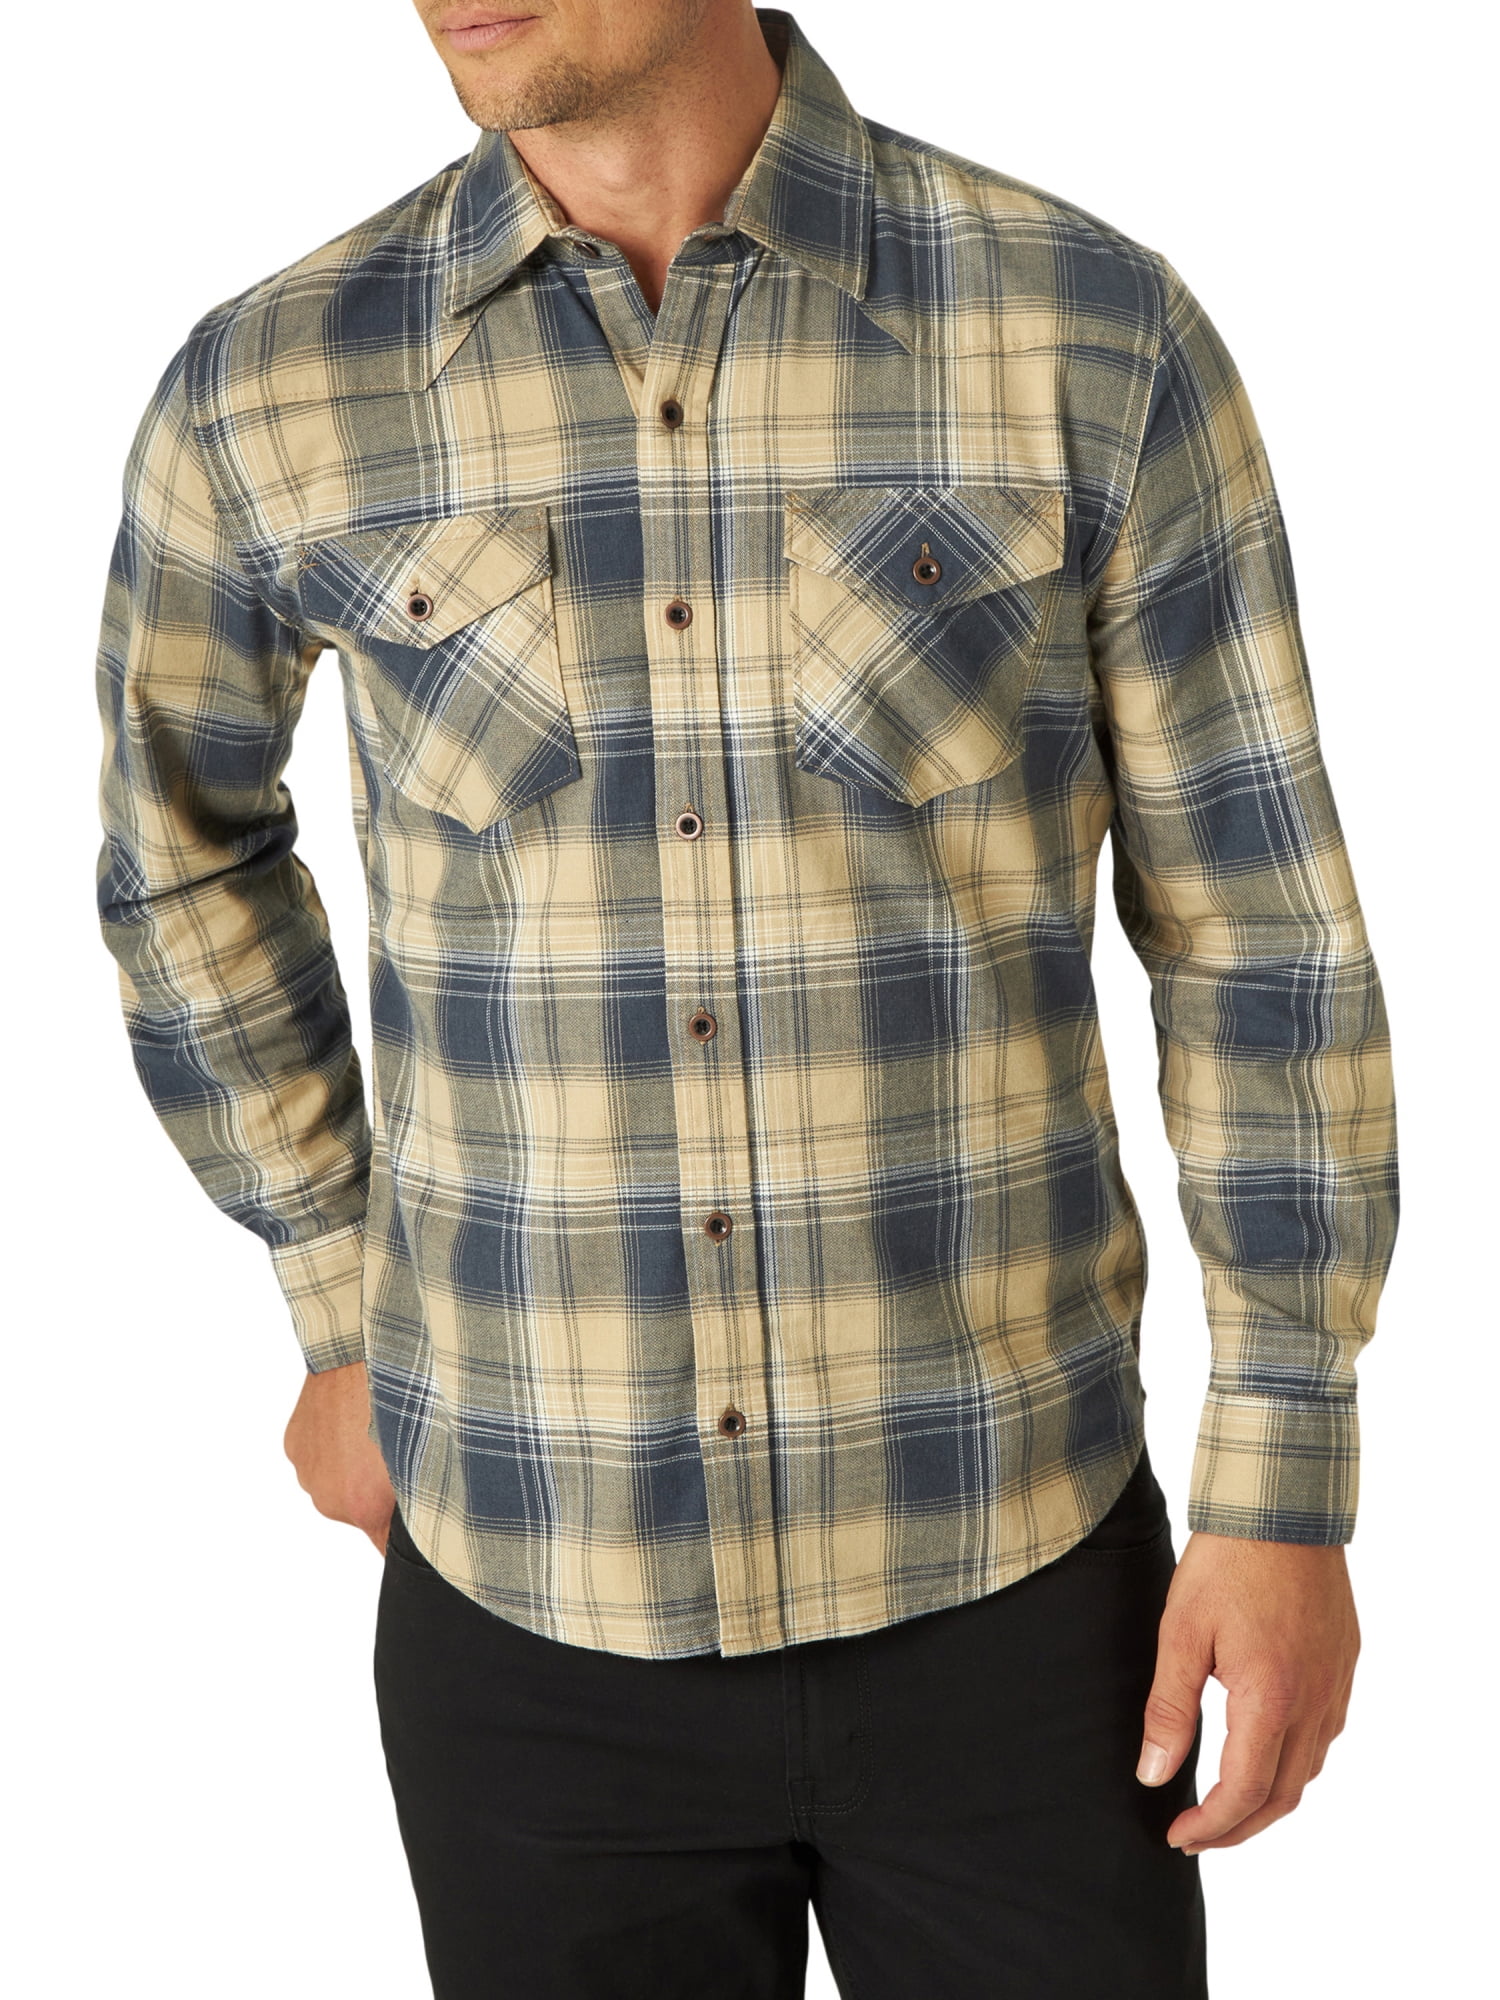 Wrangler Wrangler Men's Premium Slim Fit Plaid Shirt